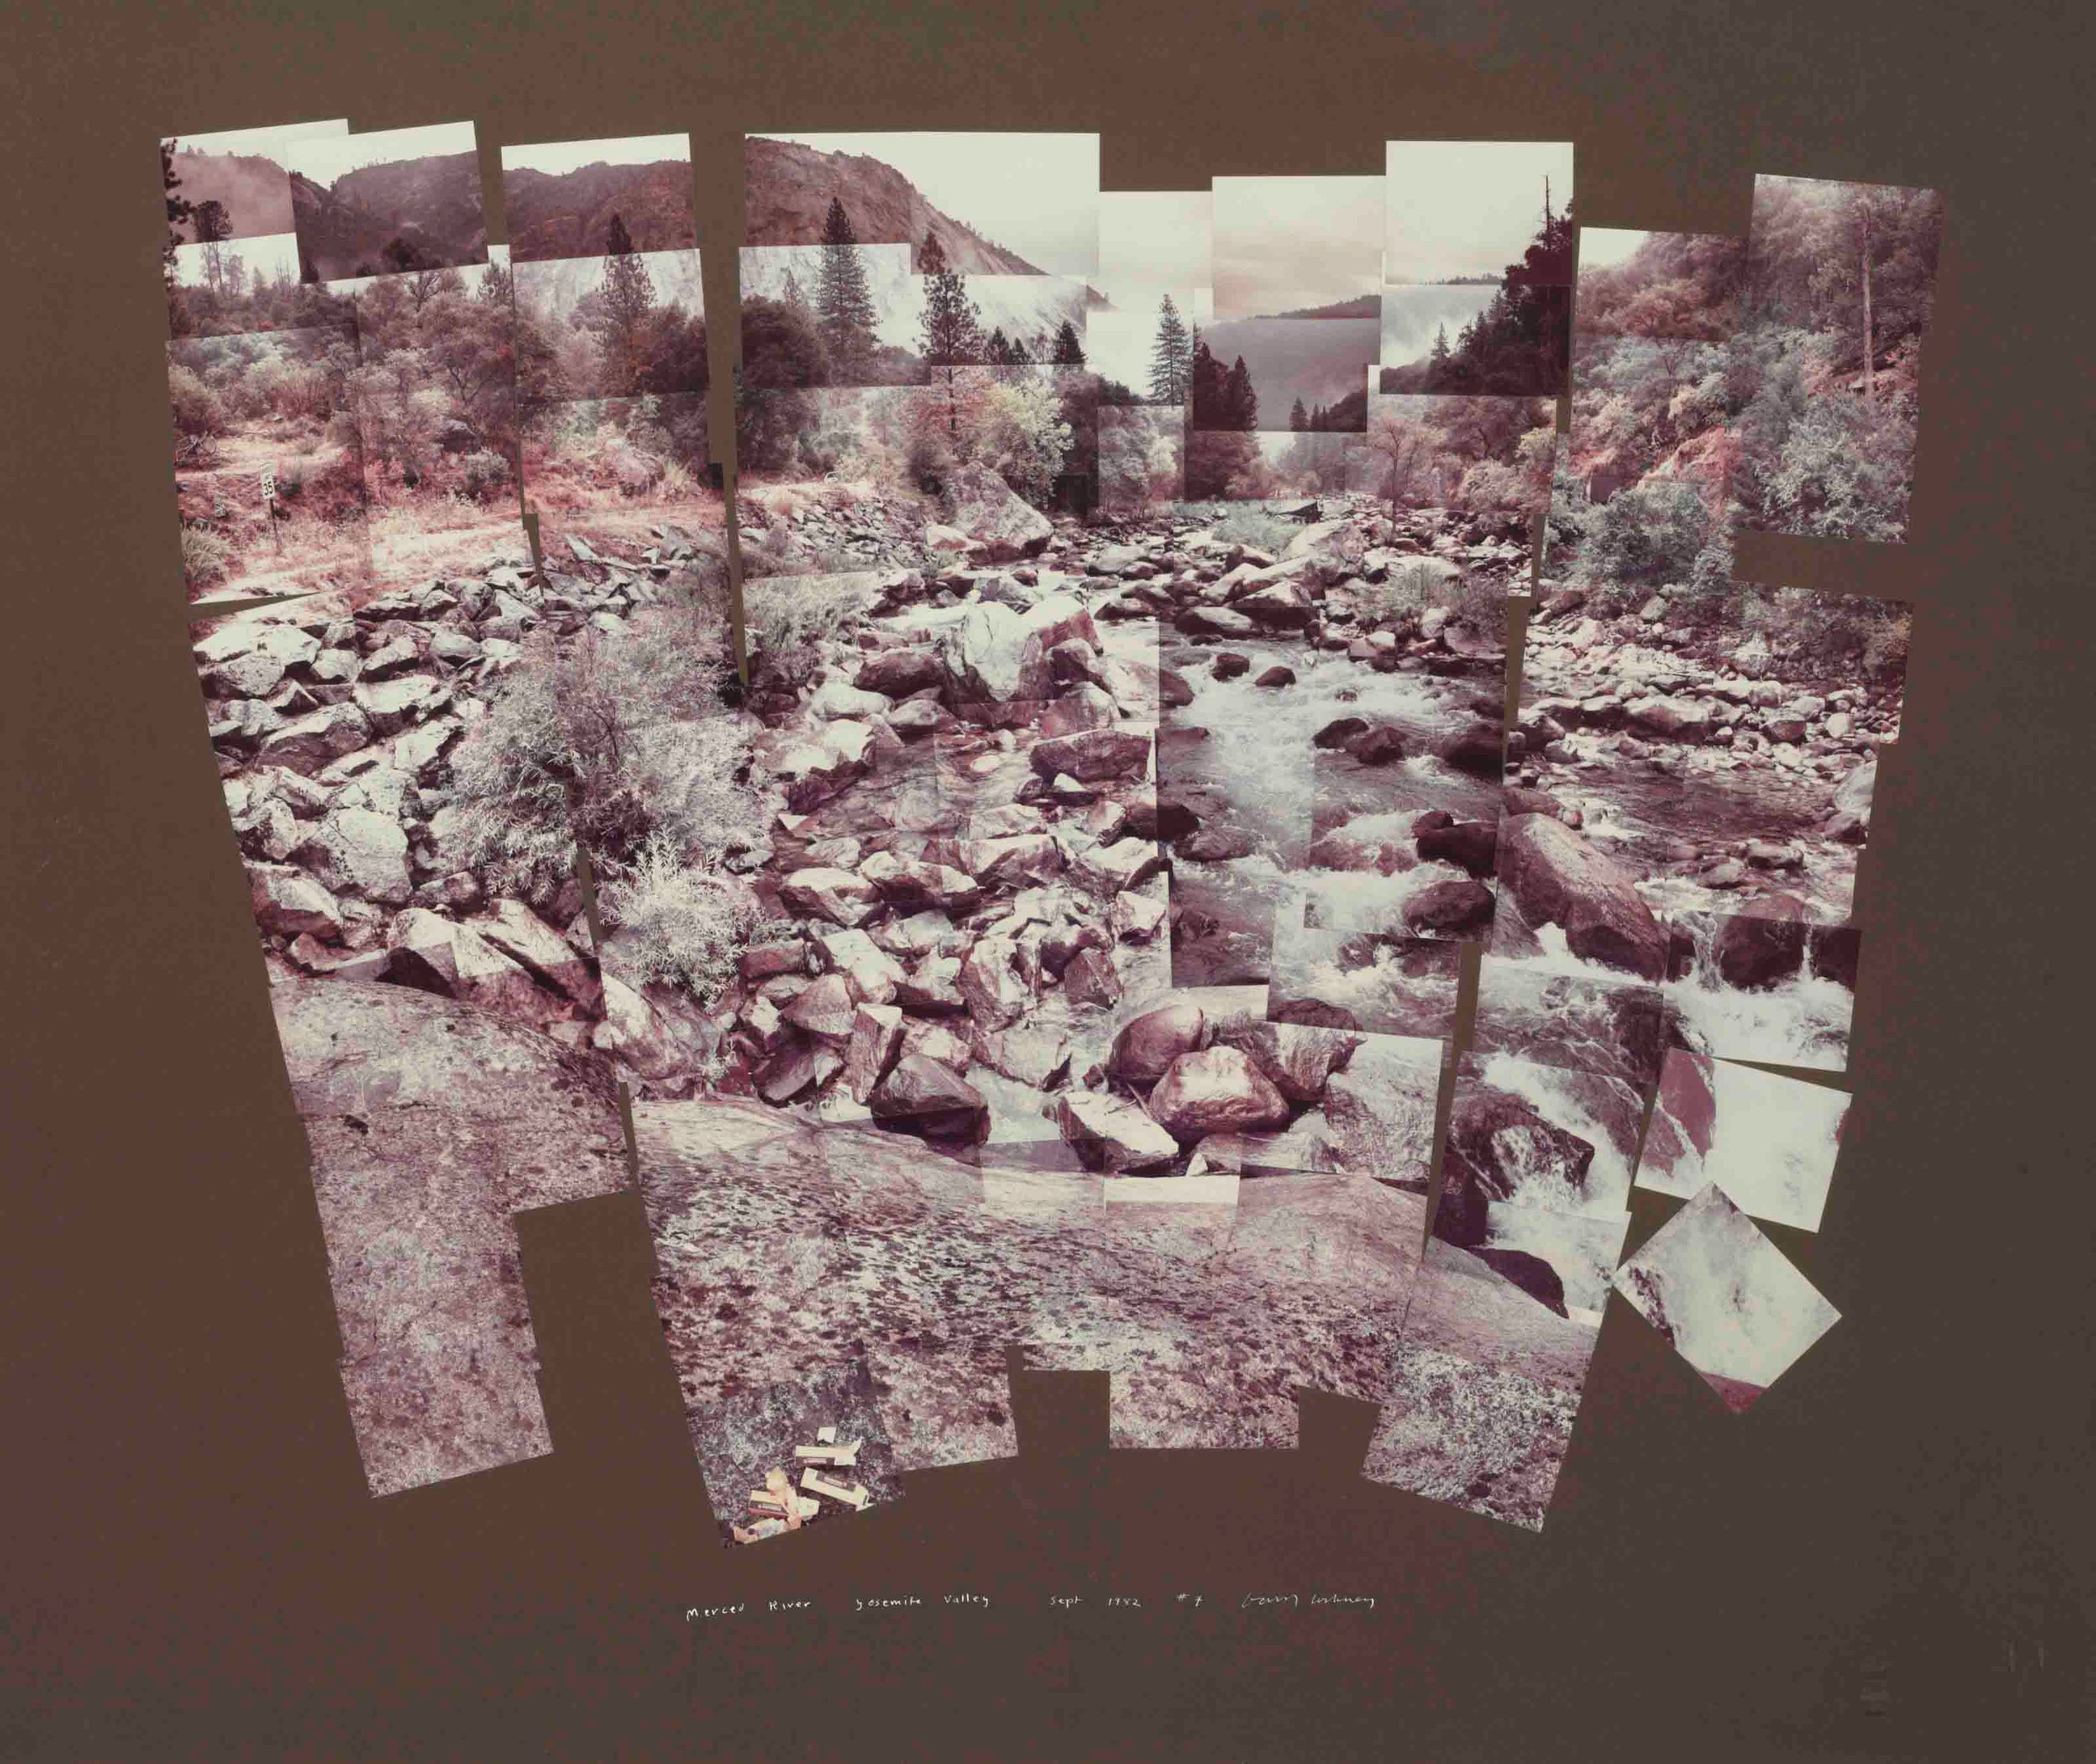 David Hockney - Merced River, Yosemite Valley (1982)